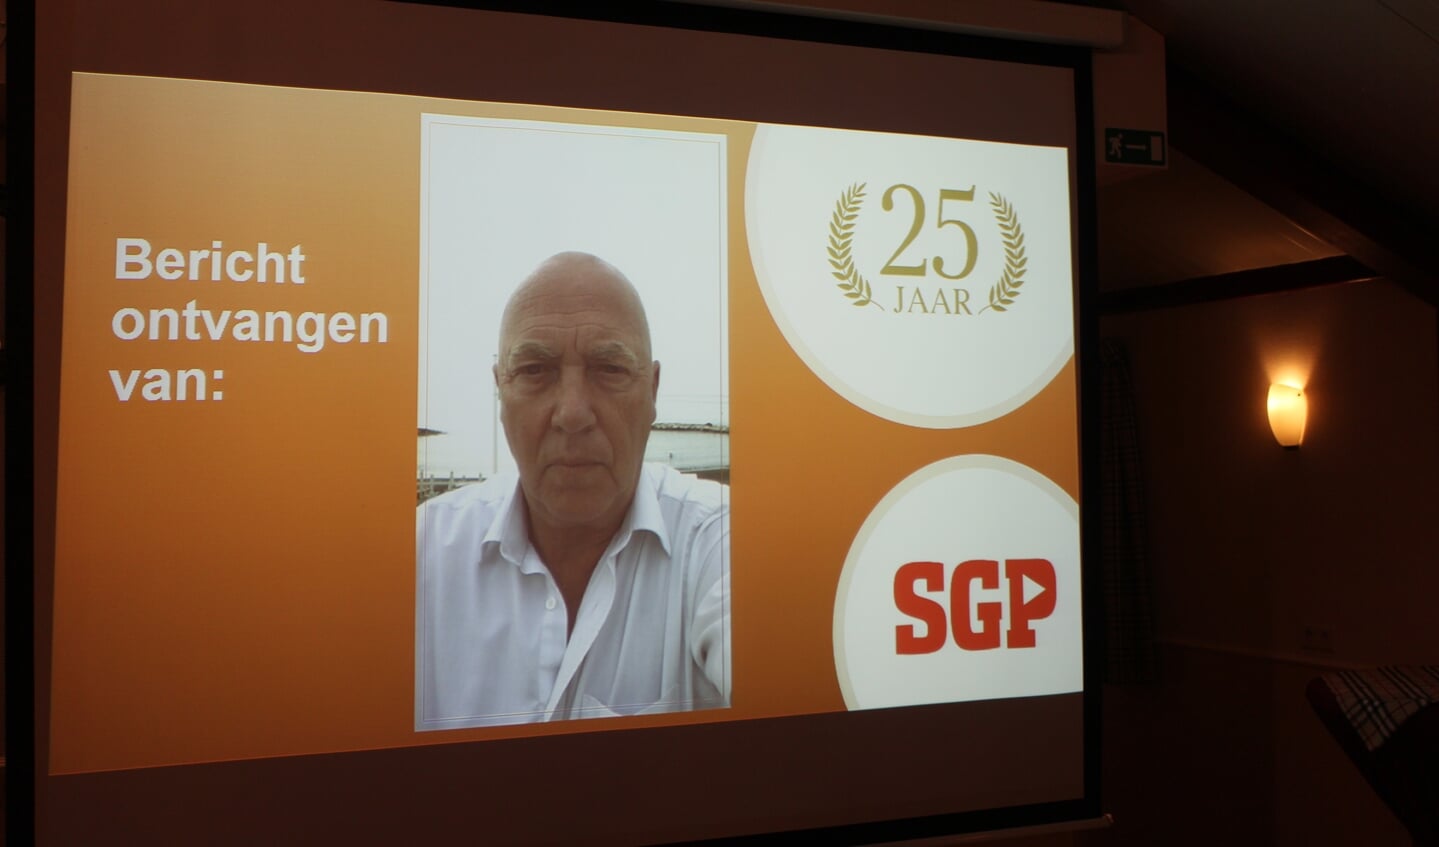 Voormalig wethouder Herman Mittendorff (PvdA) verwoordt in een videoboodschap zijn waardering en gelukwensen.